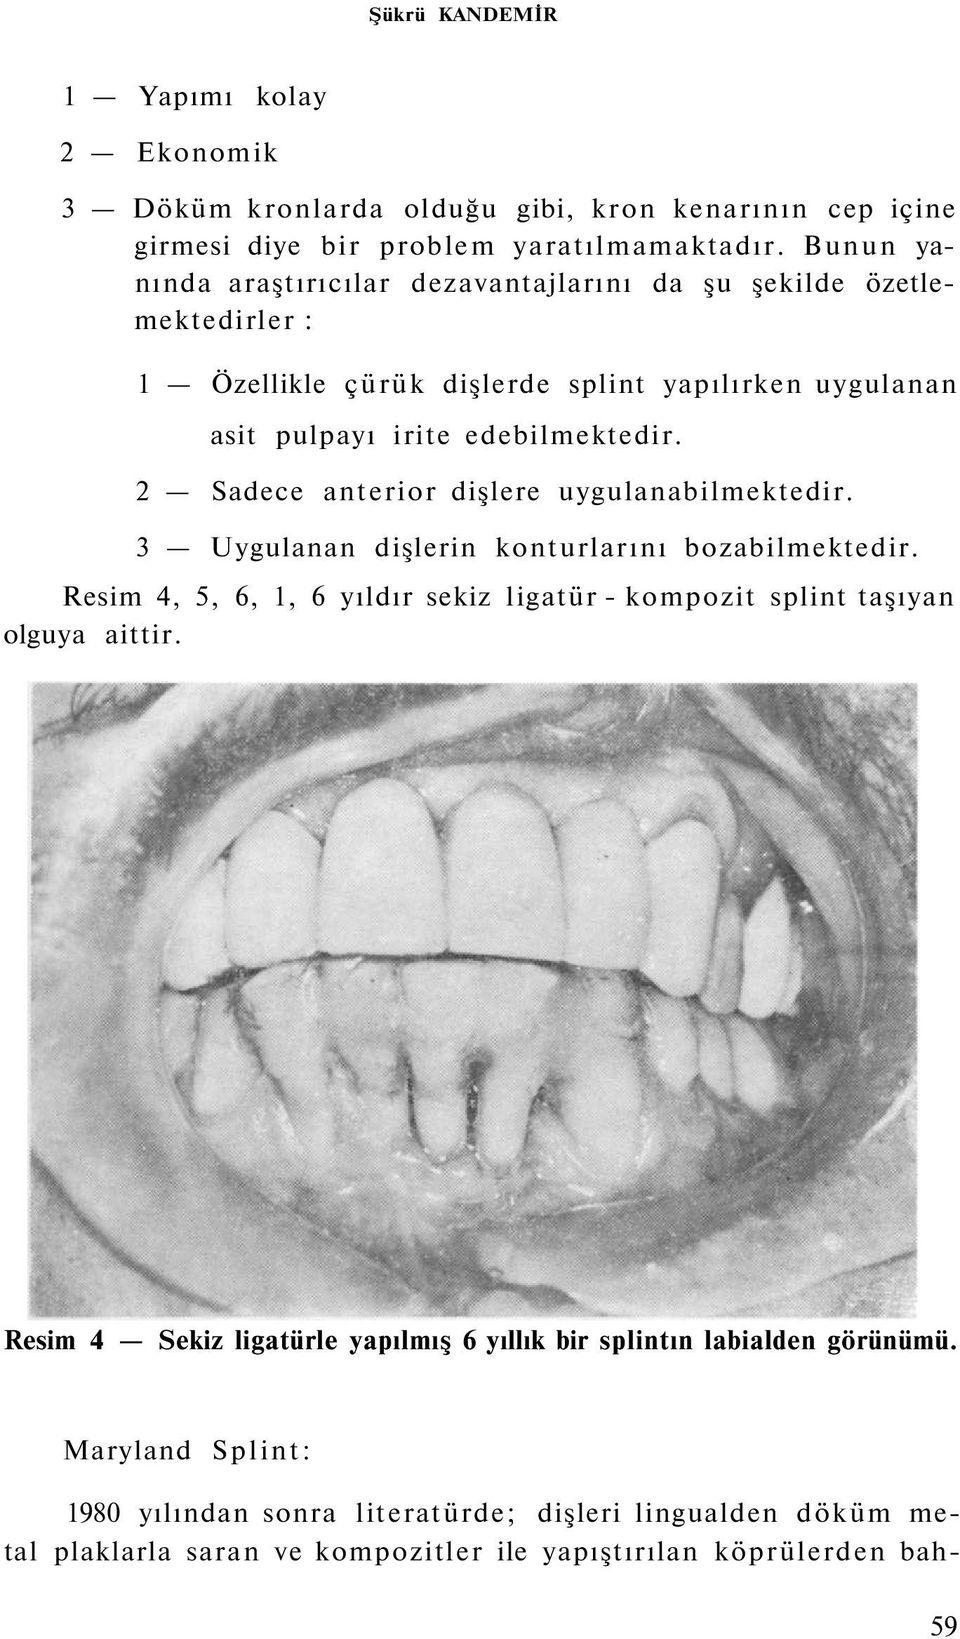 2 Sadece anterior dişlere uygulanabilmektedir. 3 Uygulanan dişlerin konturlarını bozabilmektedir. Resim 4, 5, 6, 1, 6 yıldır sekiz ligatür - kompozit splint taşıyan olguya aittir.